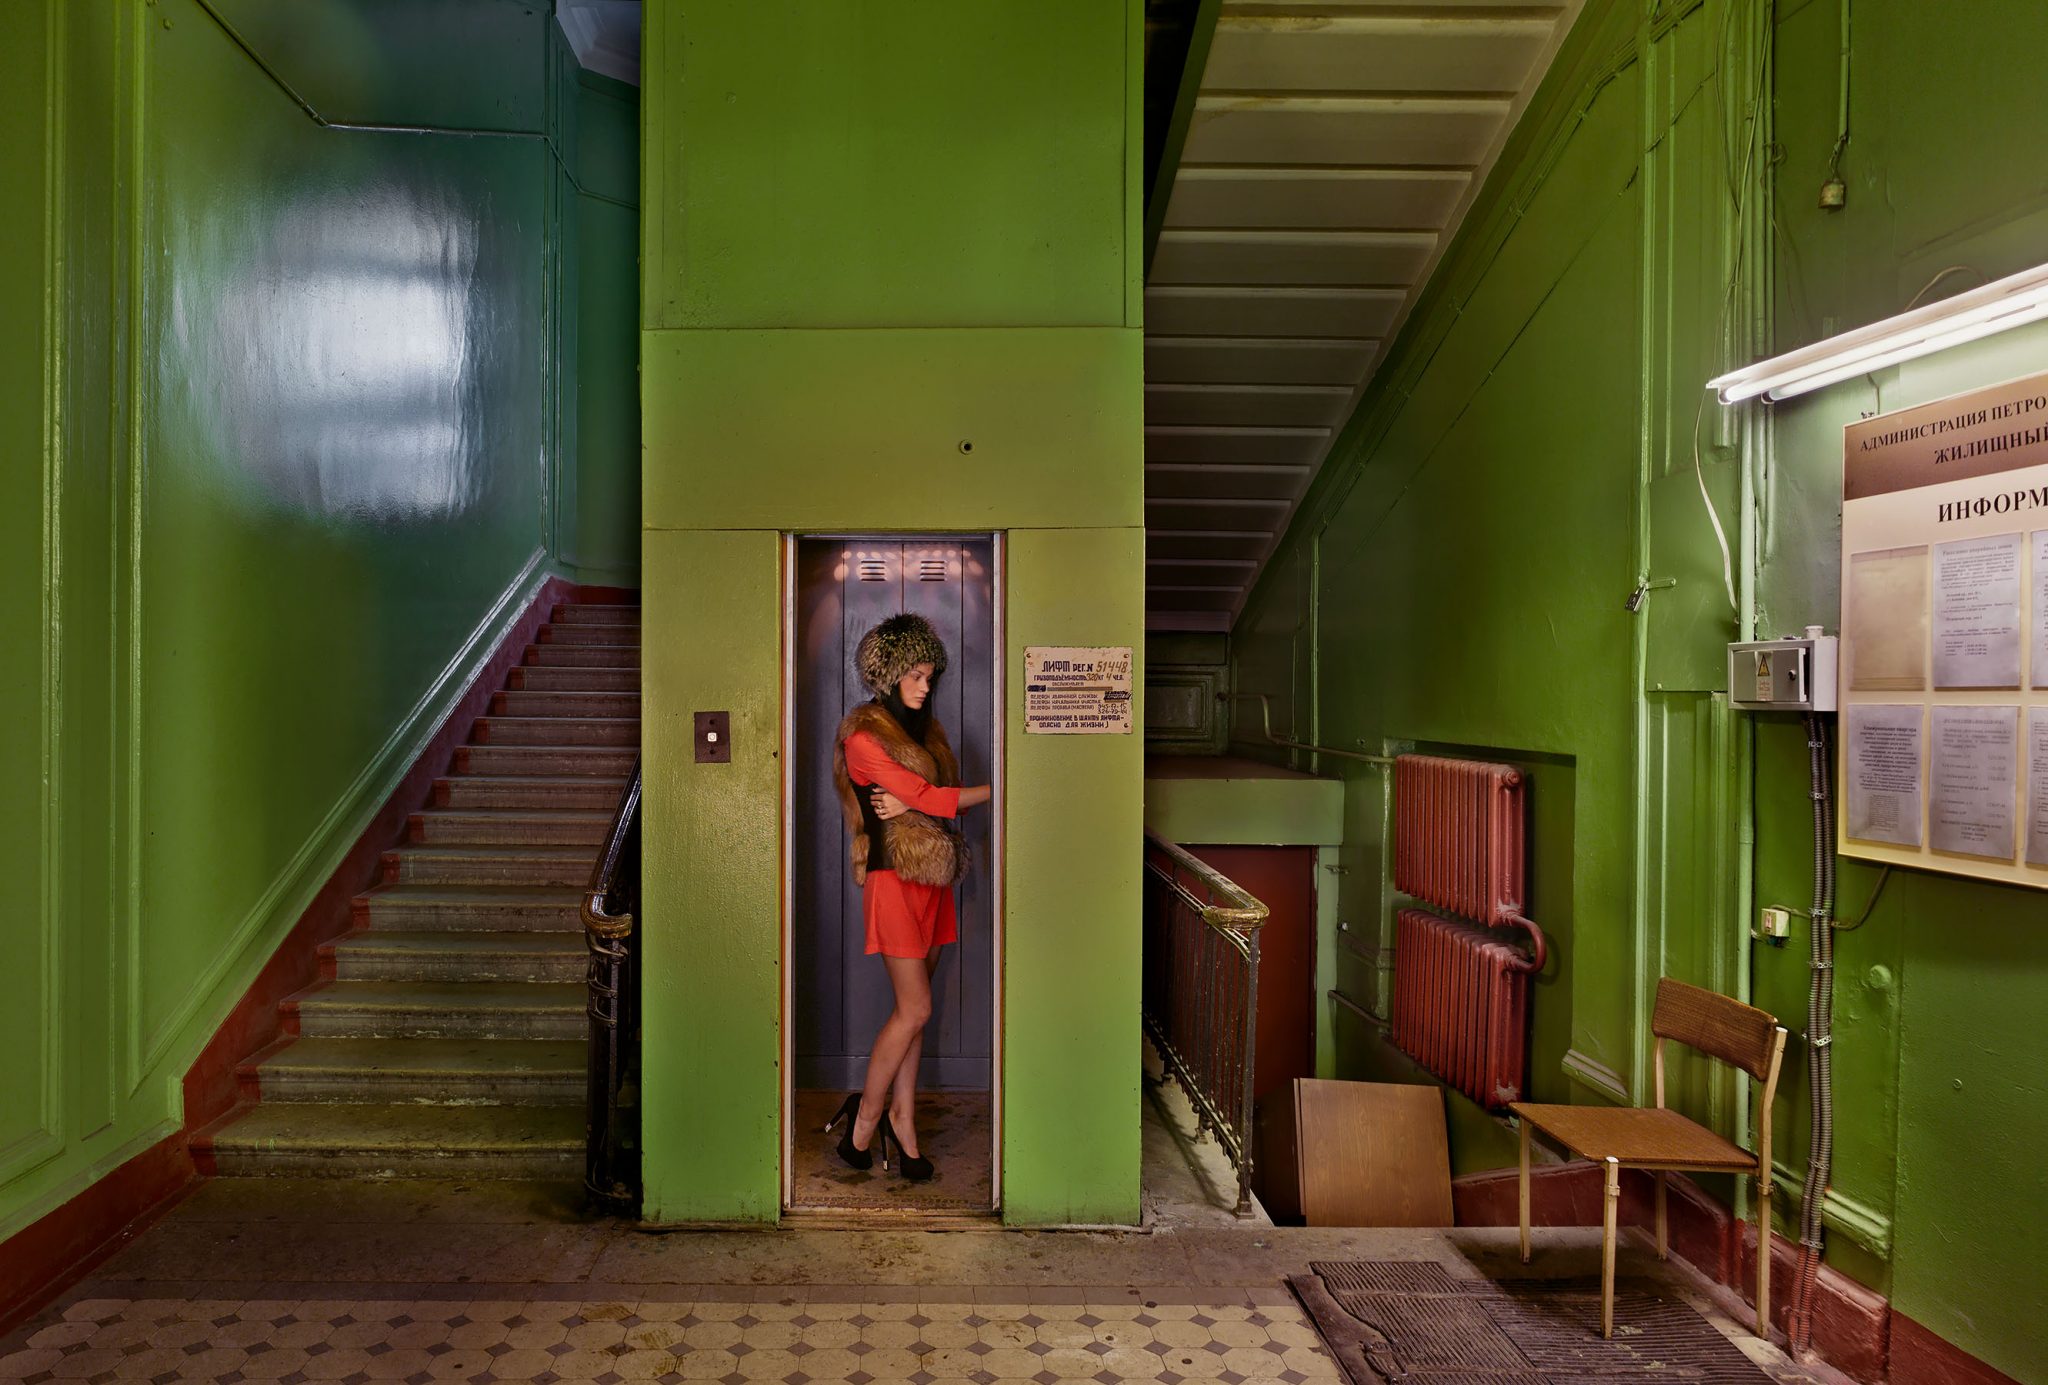 Фотограф из Германии создал серию снимков России 21 века, показав её стильной, яркой и душевной 81